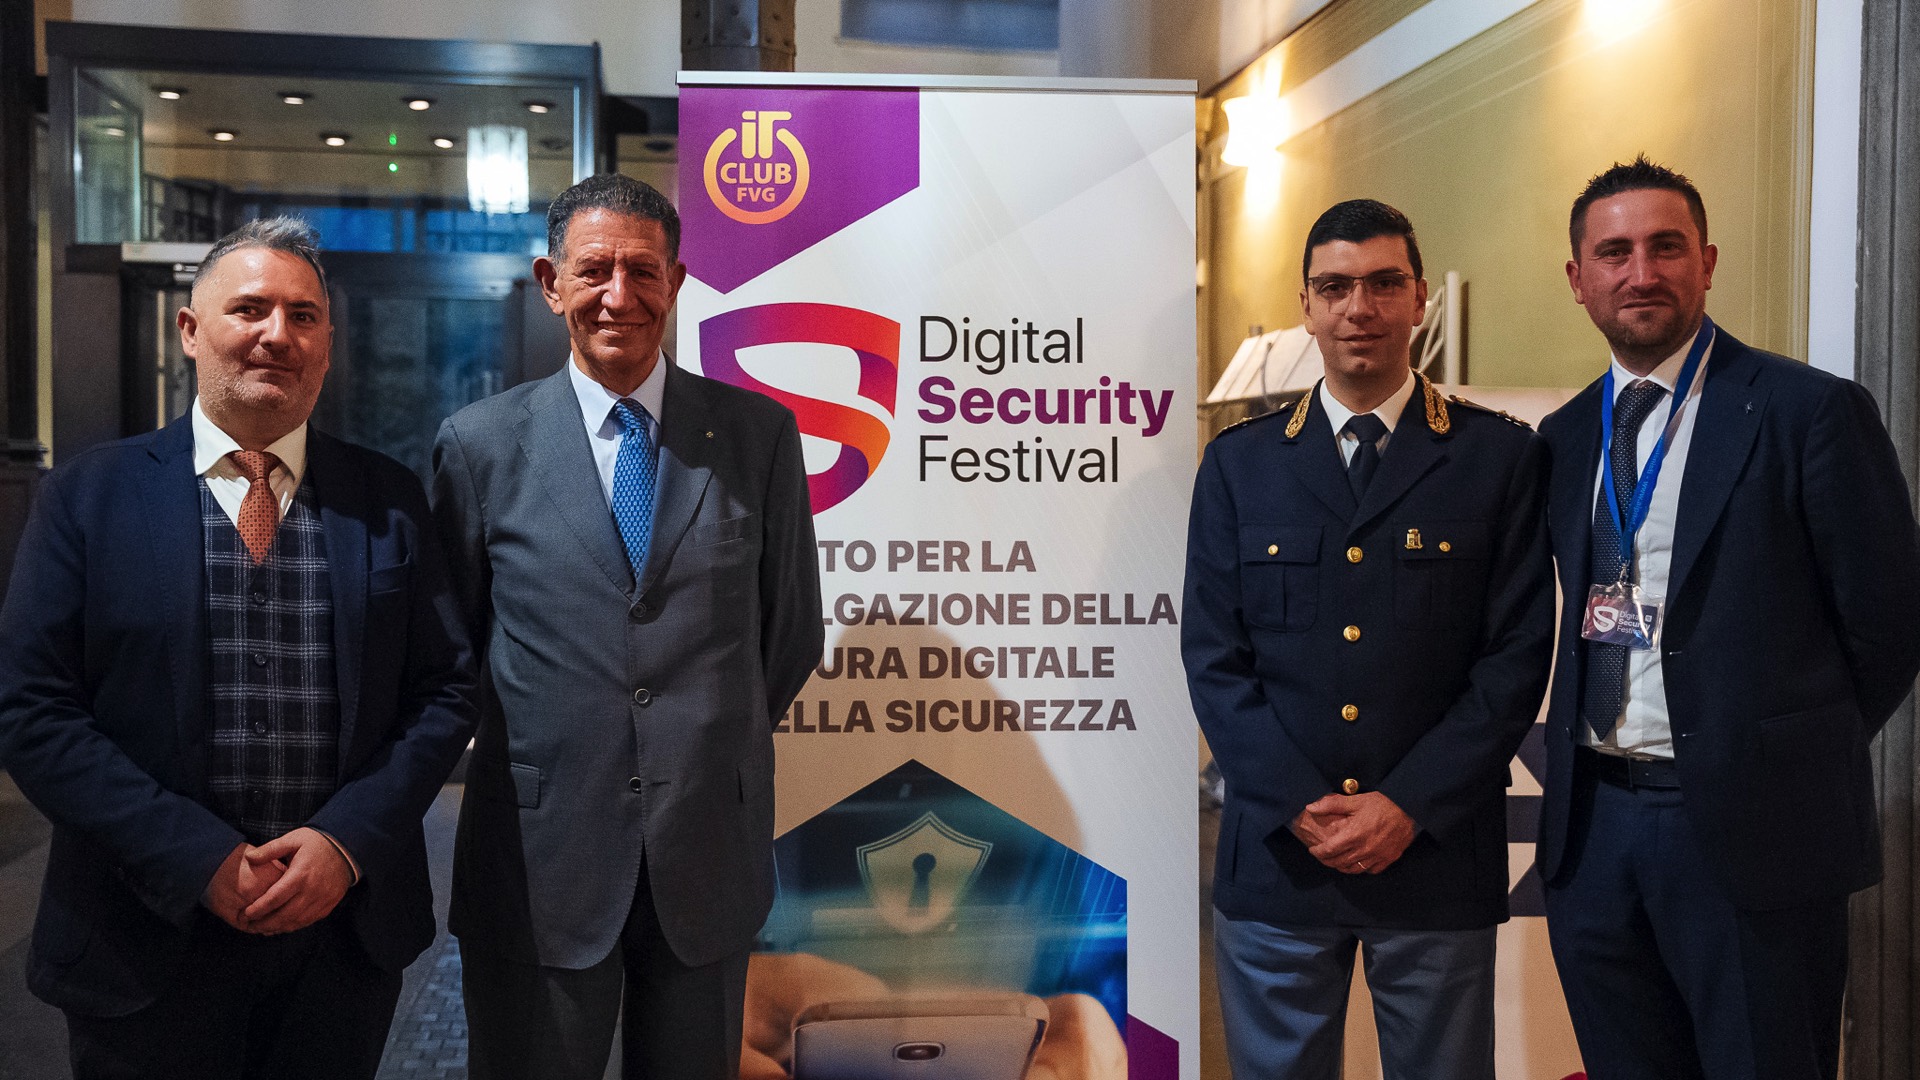 Digital Security Festival, patrocinato da Italiamac, chiude una edizione da record 1